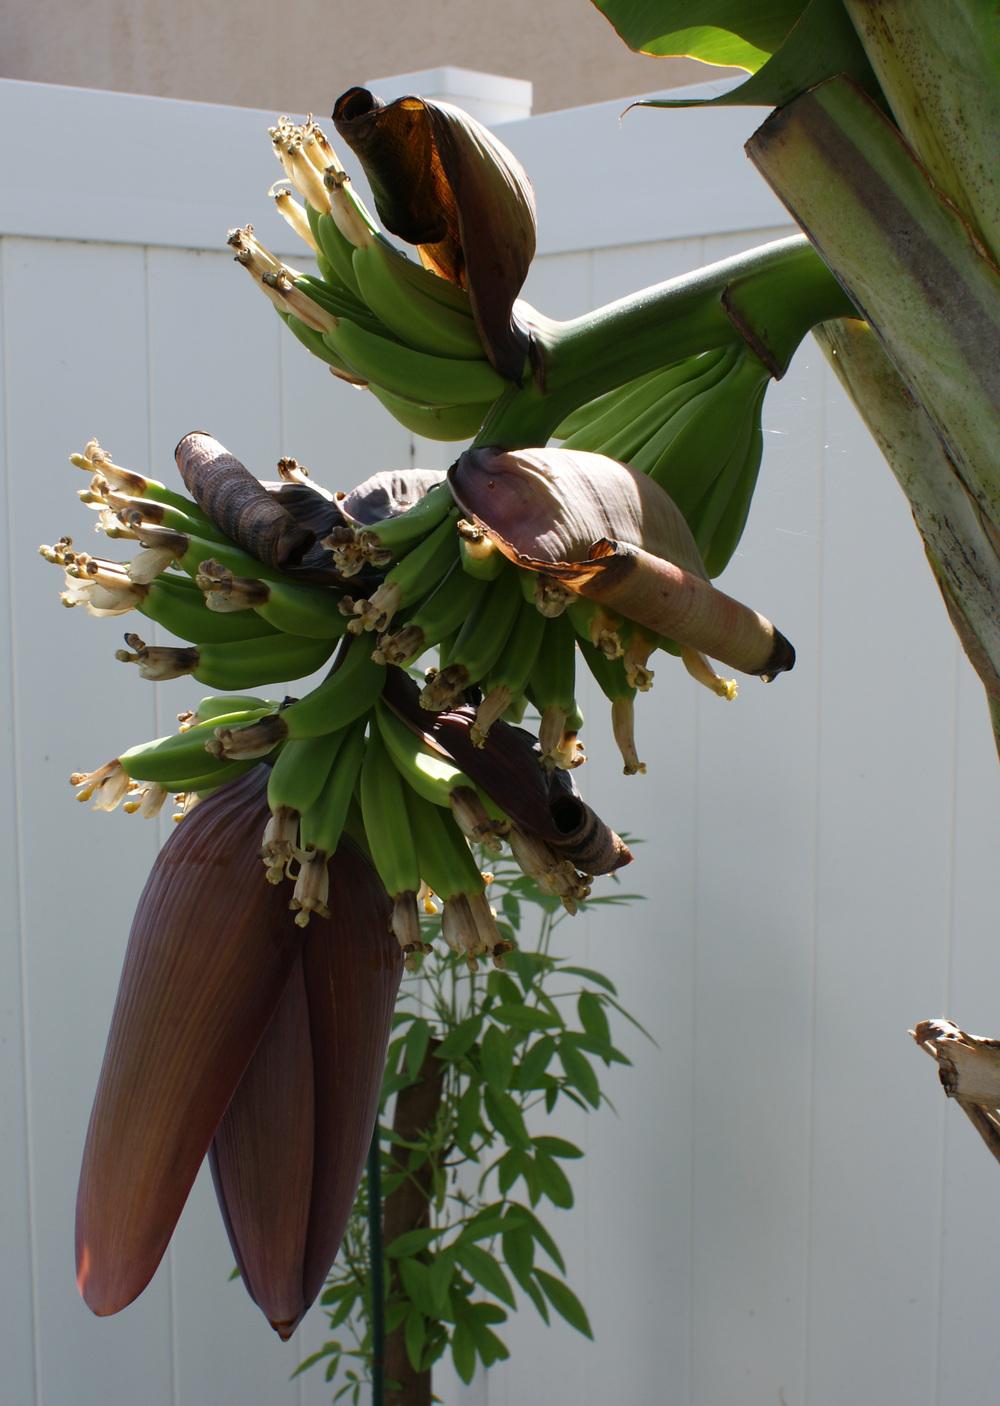 Photo of Banana (Musa acuminata) uploaded by MamaIve12